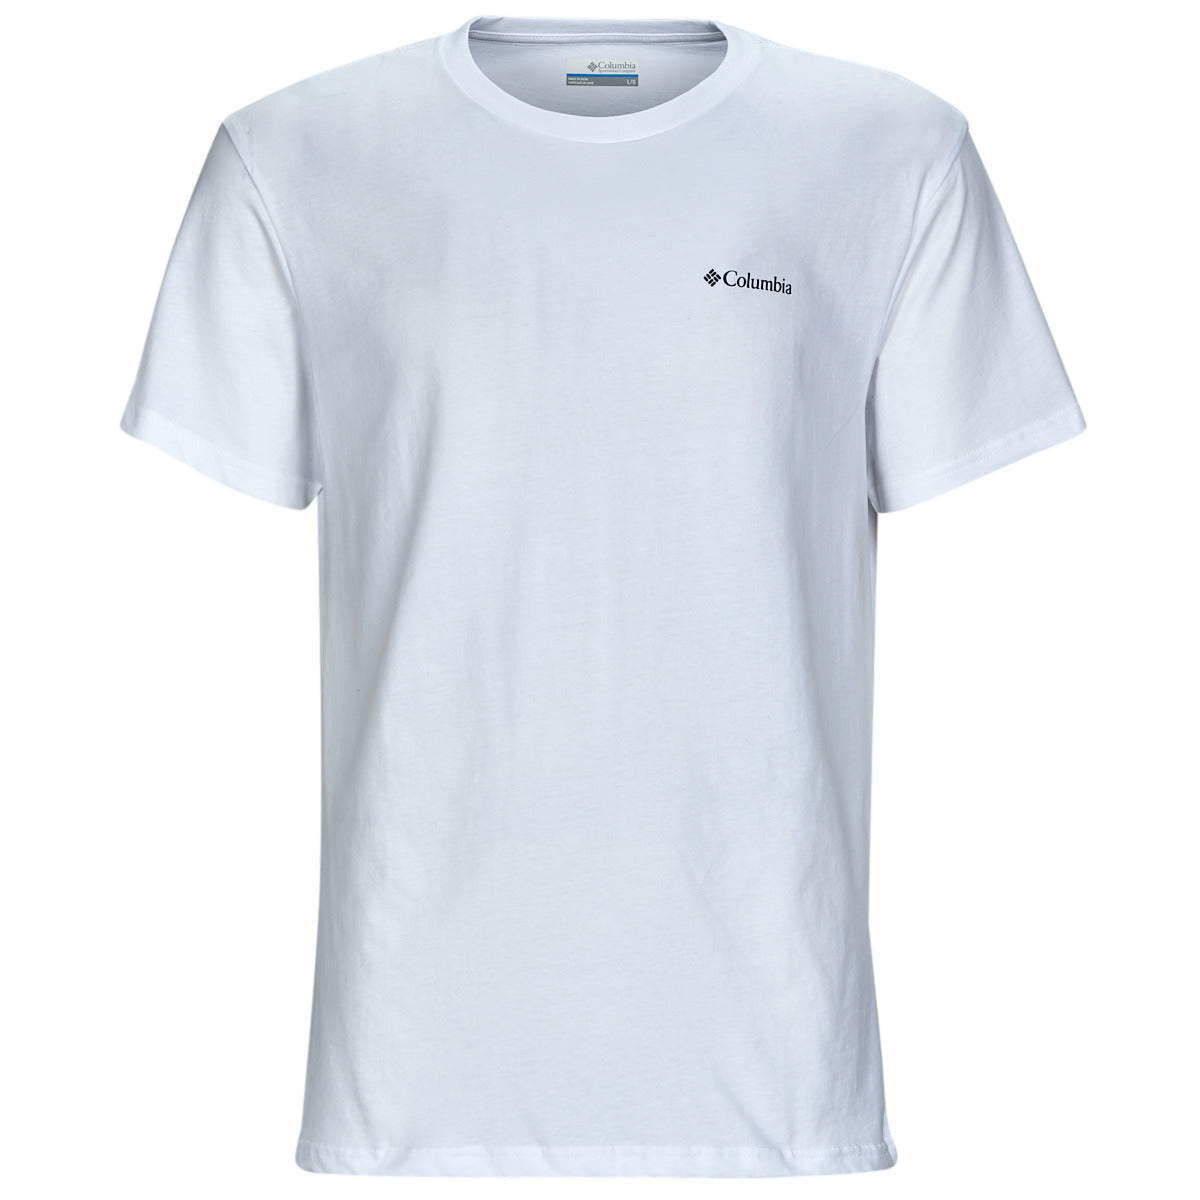 White Csc basic logo t-shirt